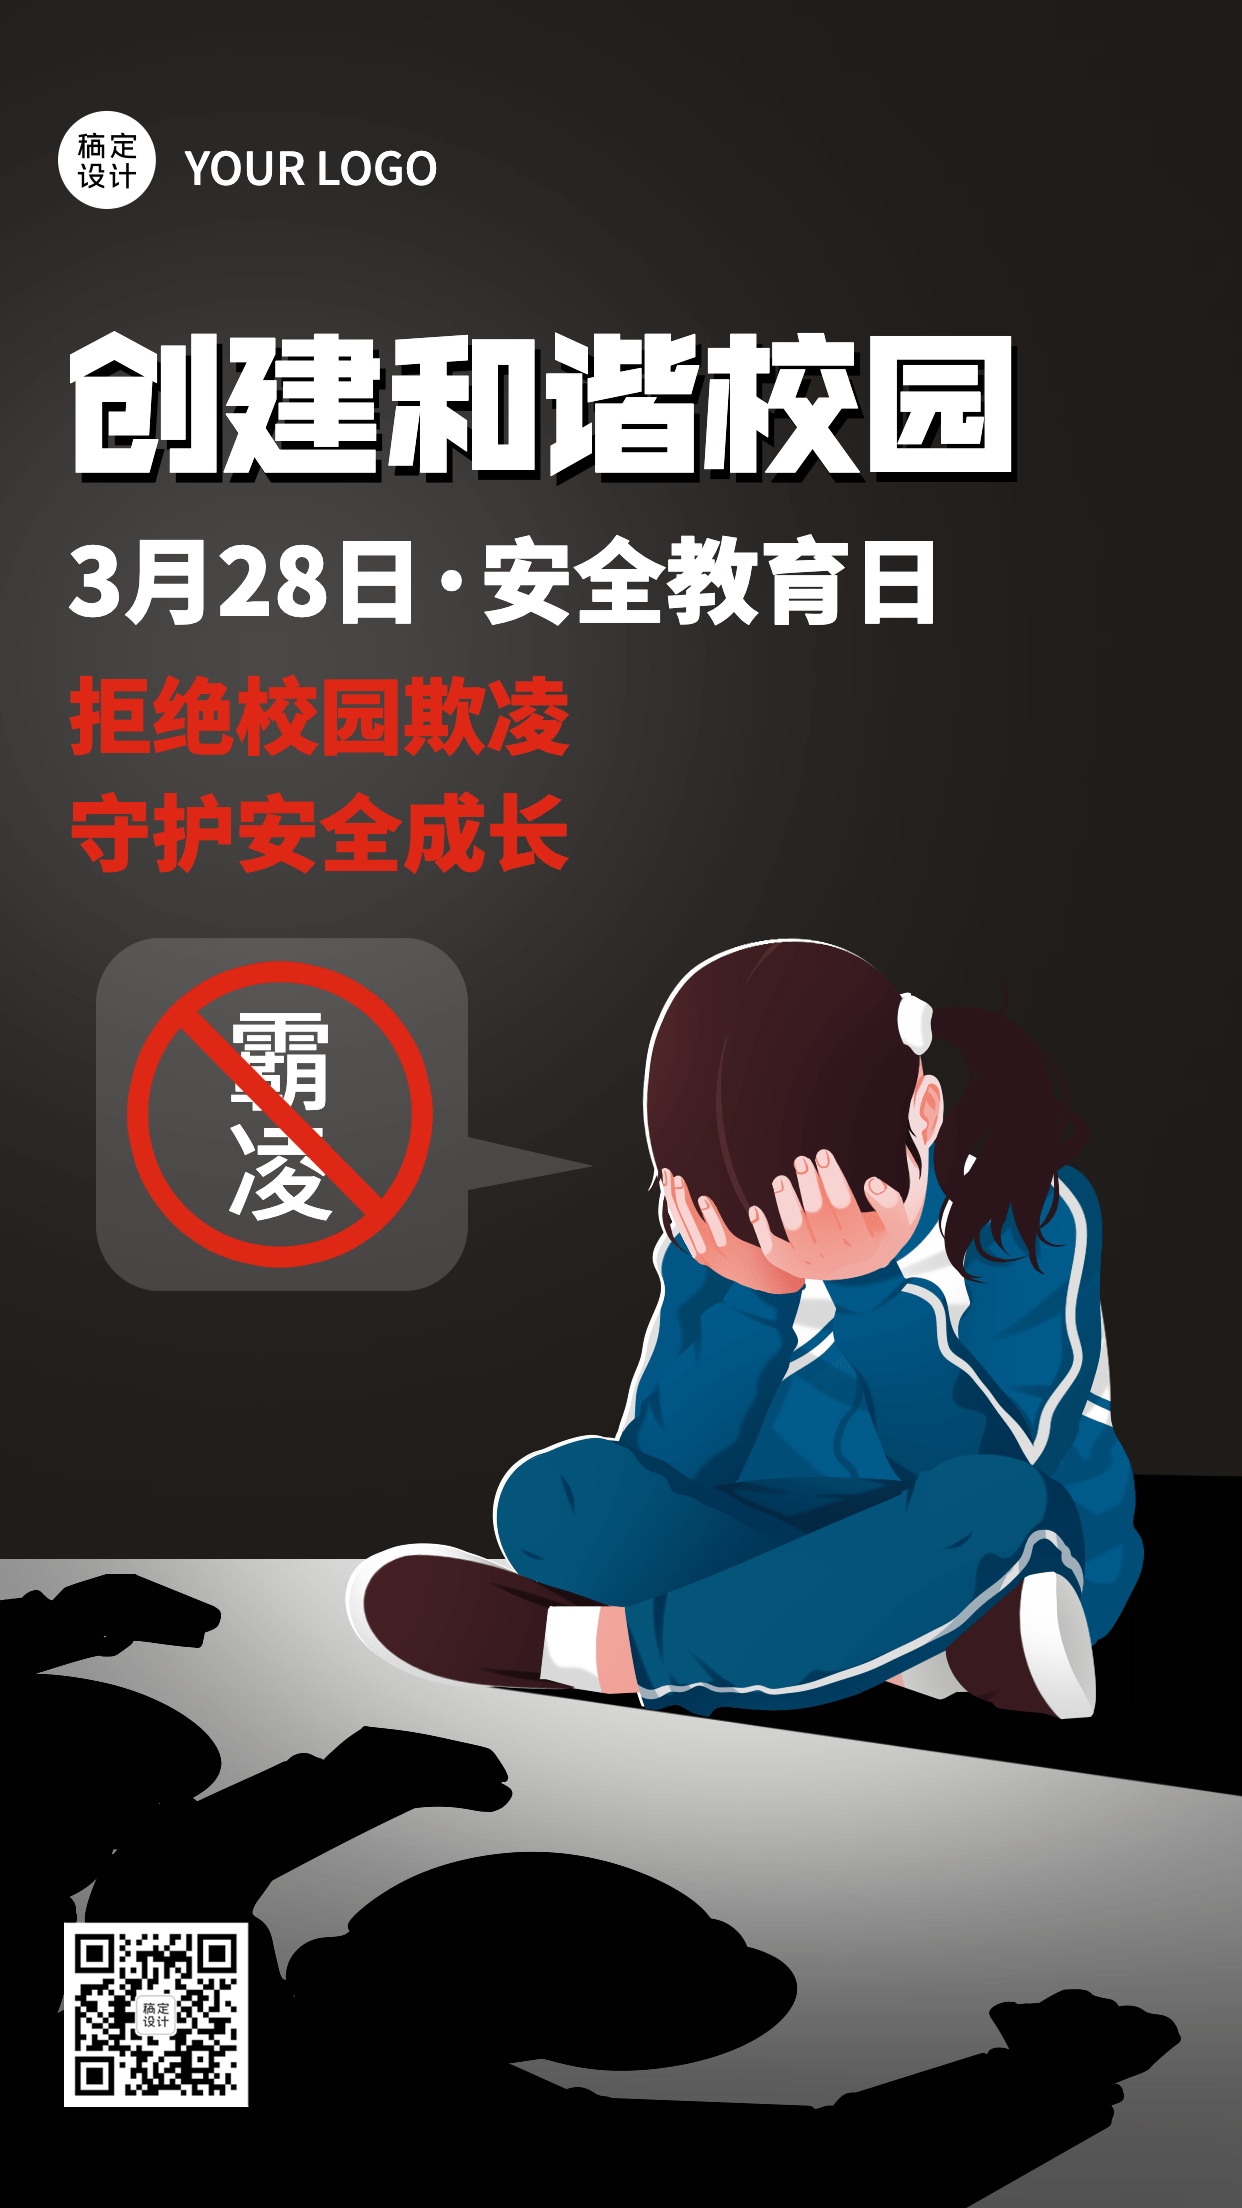 中小学安全教育日节日宣传手绘插画手机海报预览效果